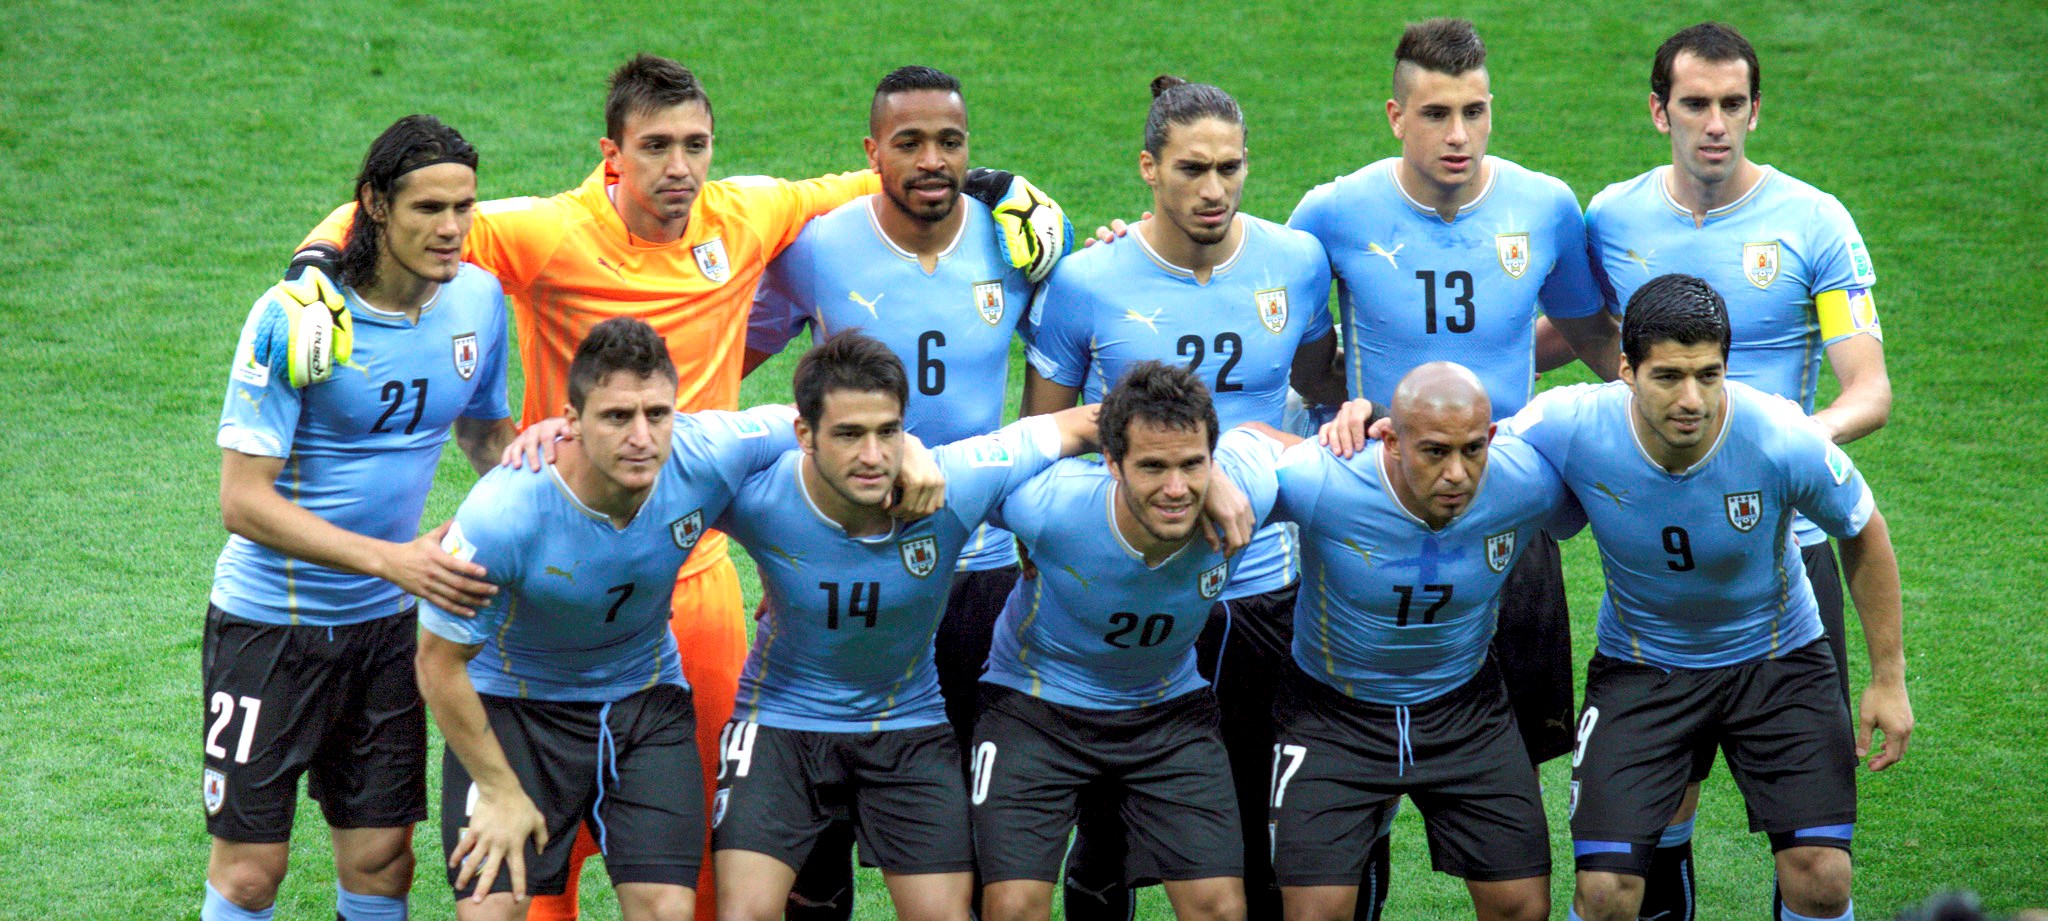 Uruguay Football Team 2018